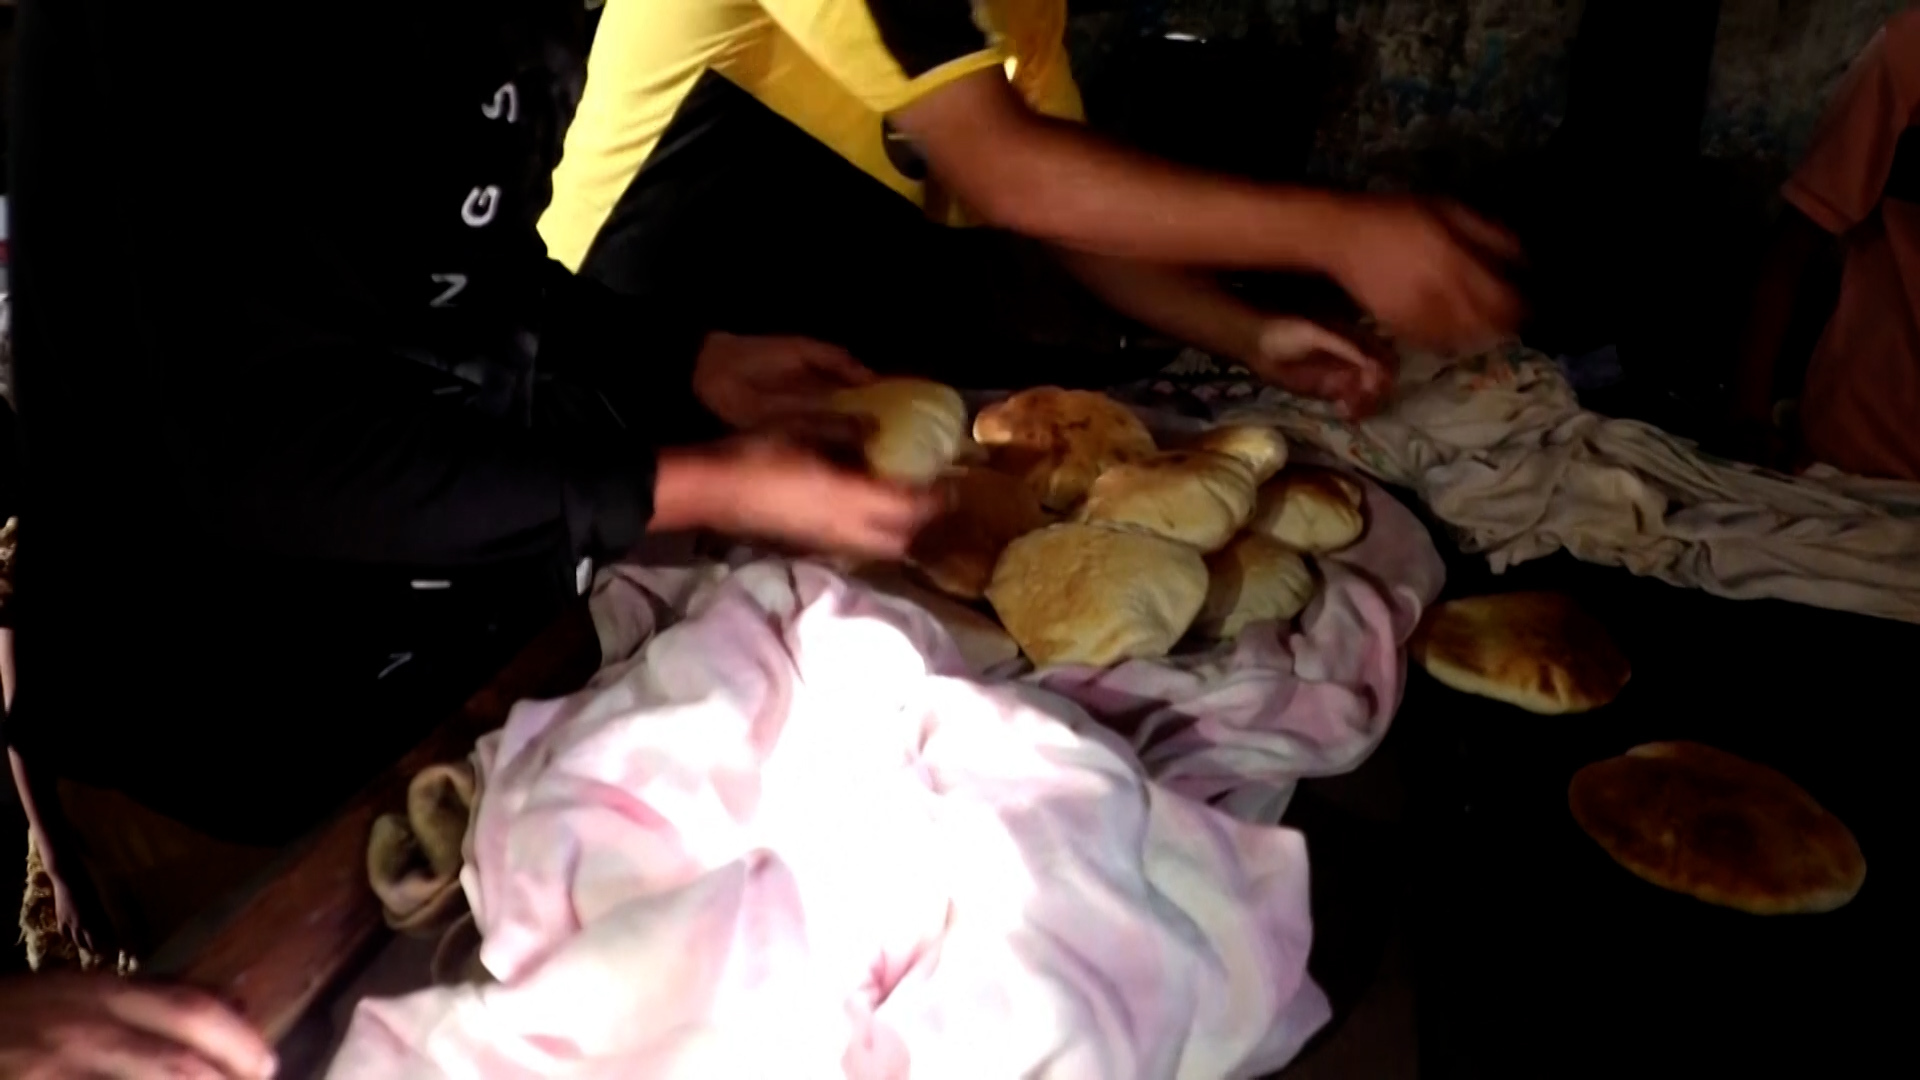 أزمة خبز خانقة سبّبتها الحرب الإسرائيلية على غزة | أخبار – البوكس نيوز